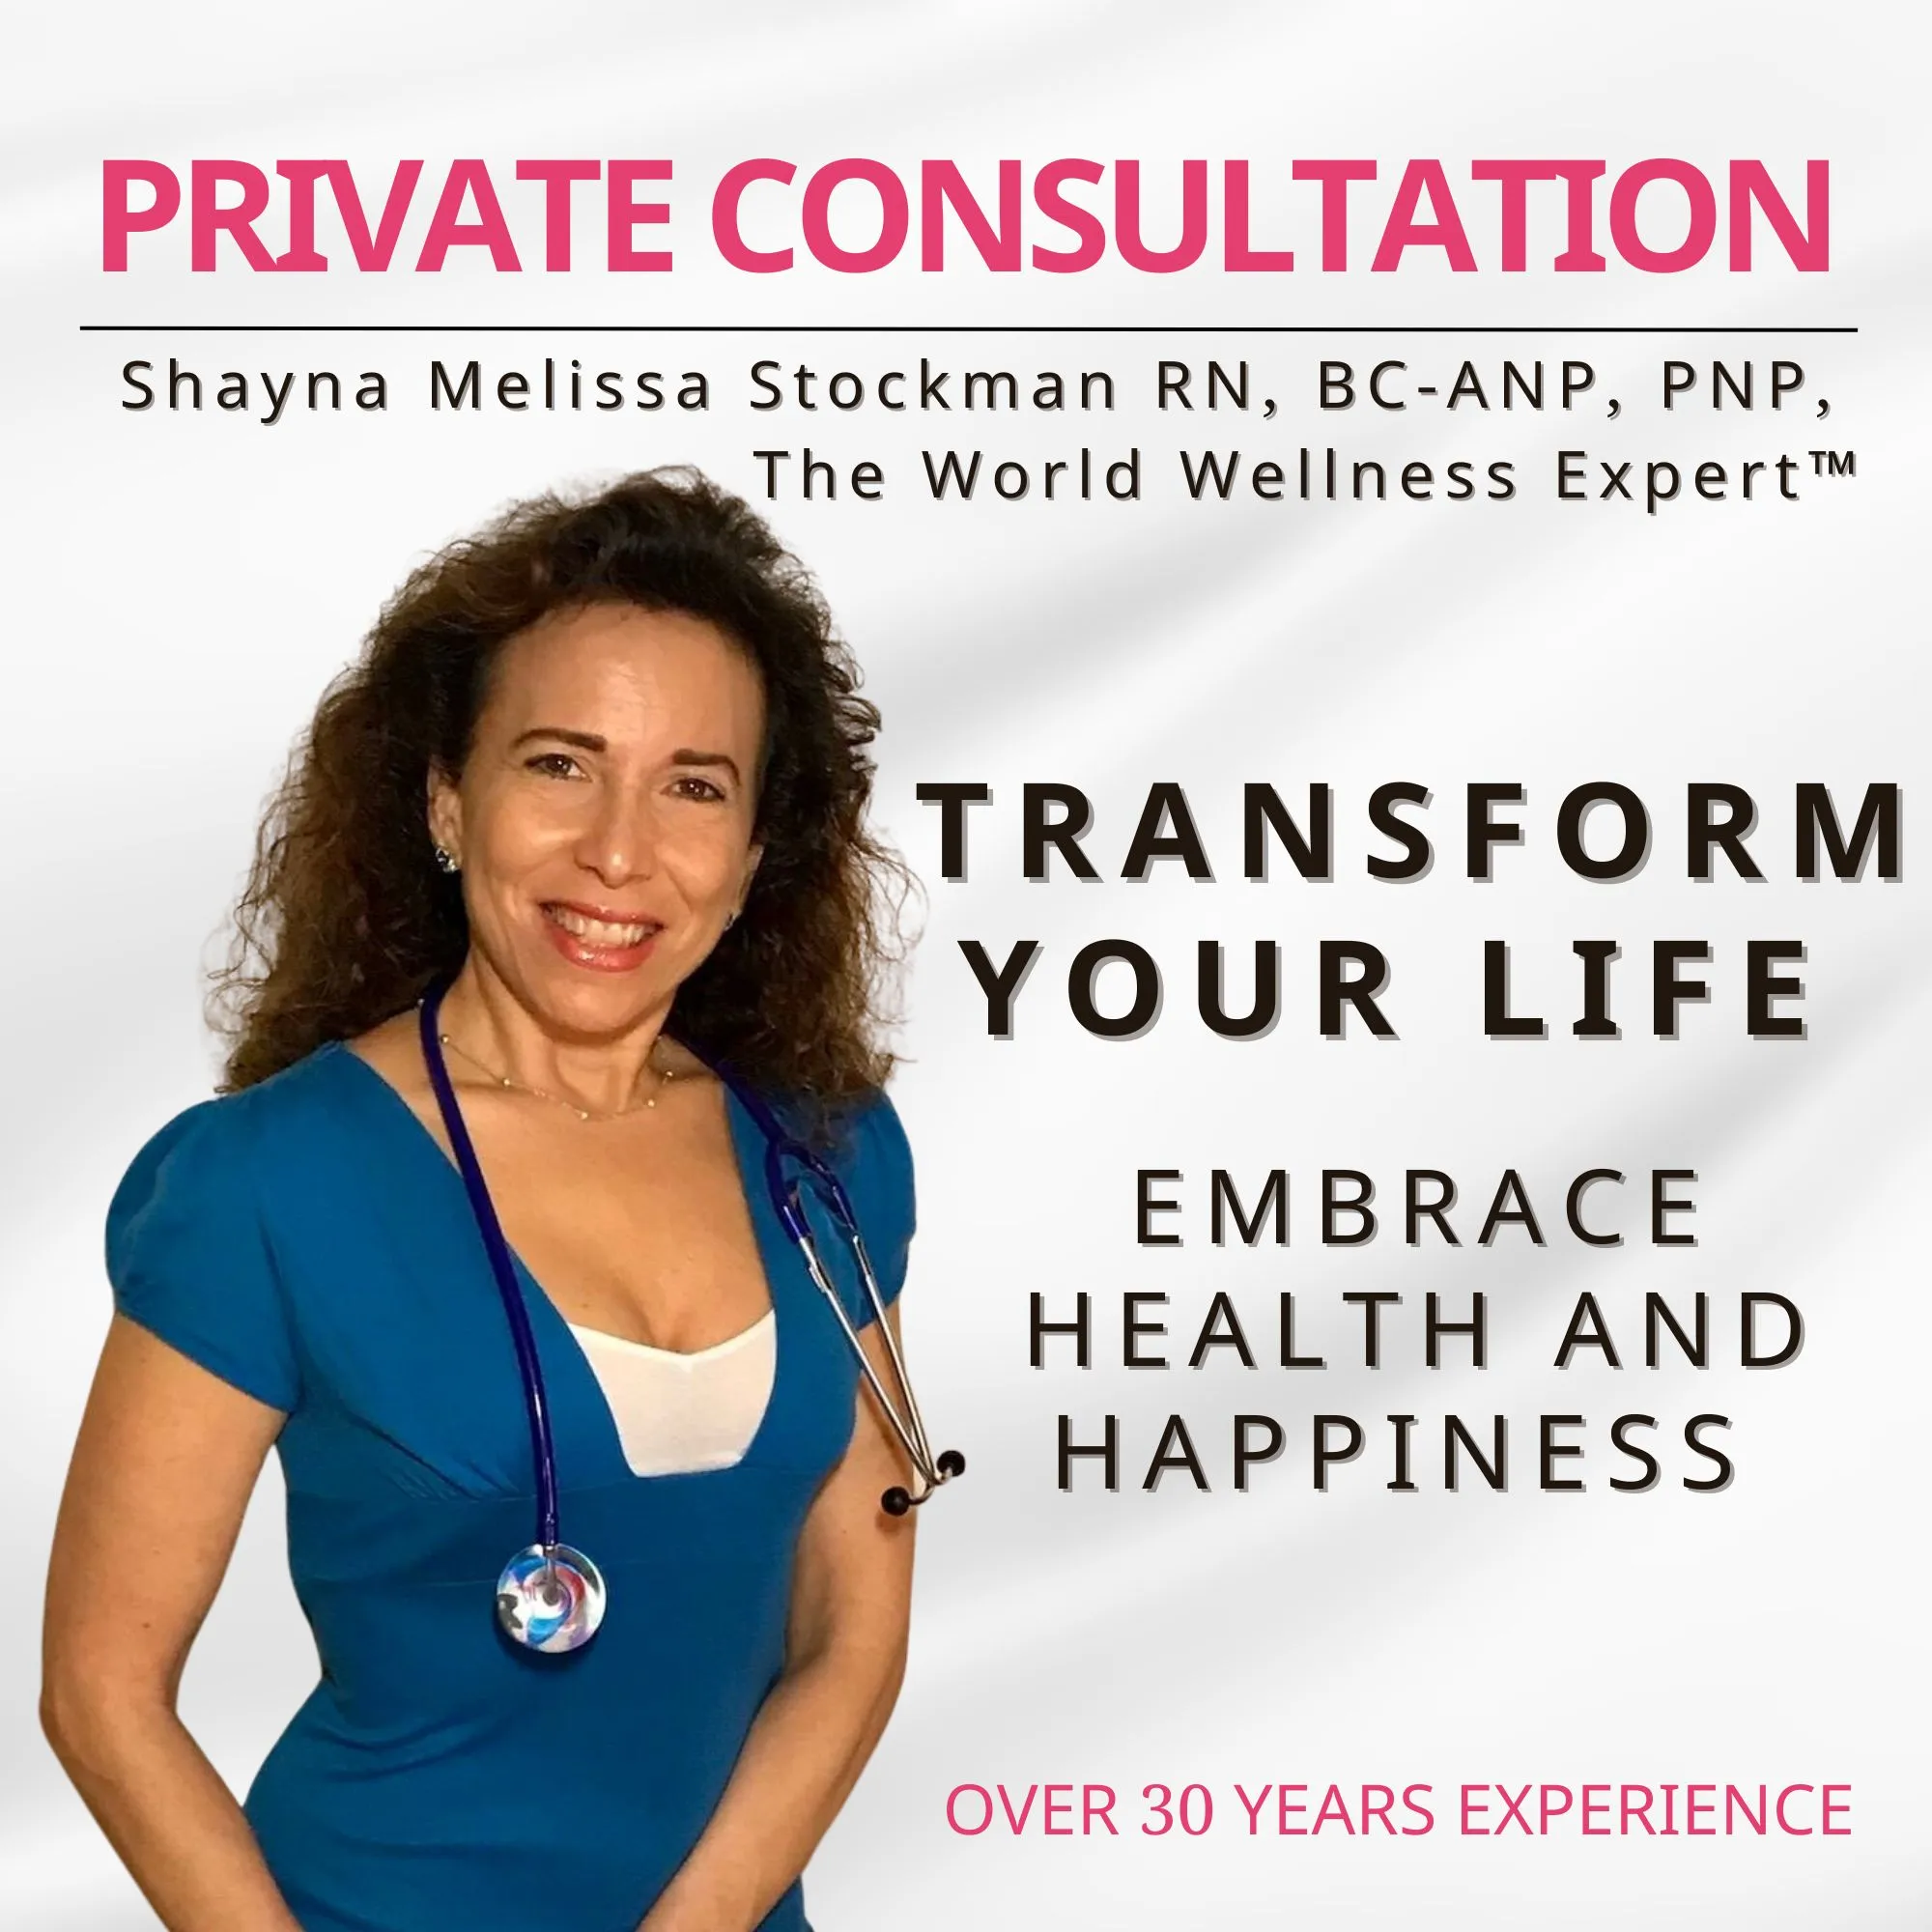 shayna melissa stockman free consultation